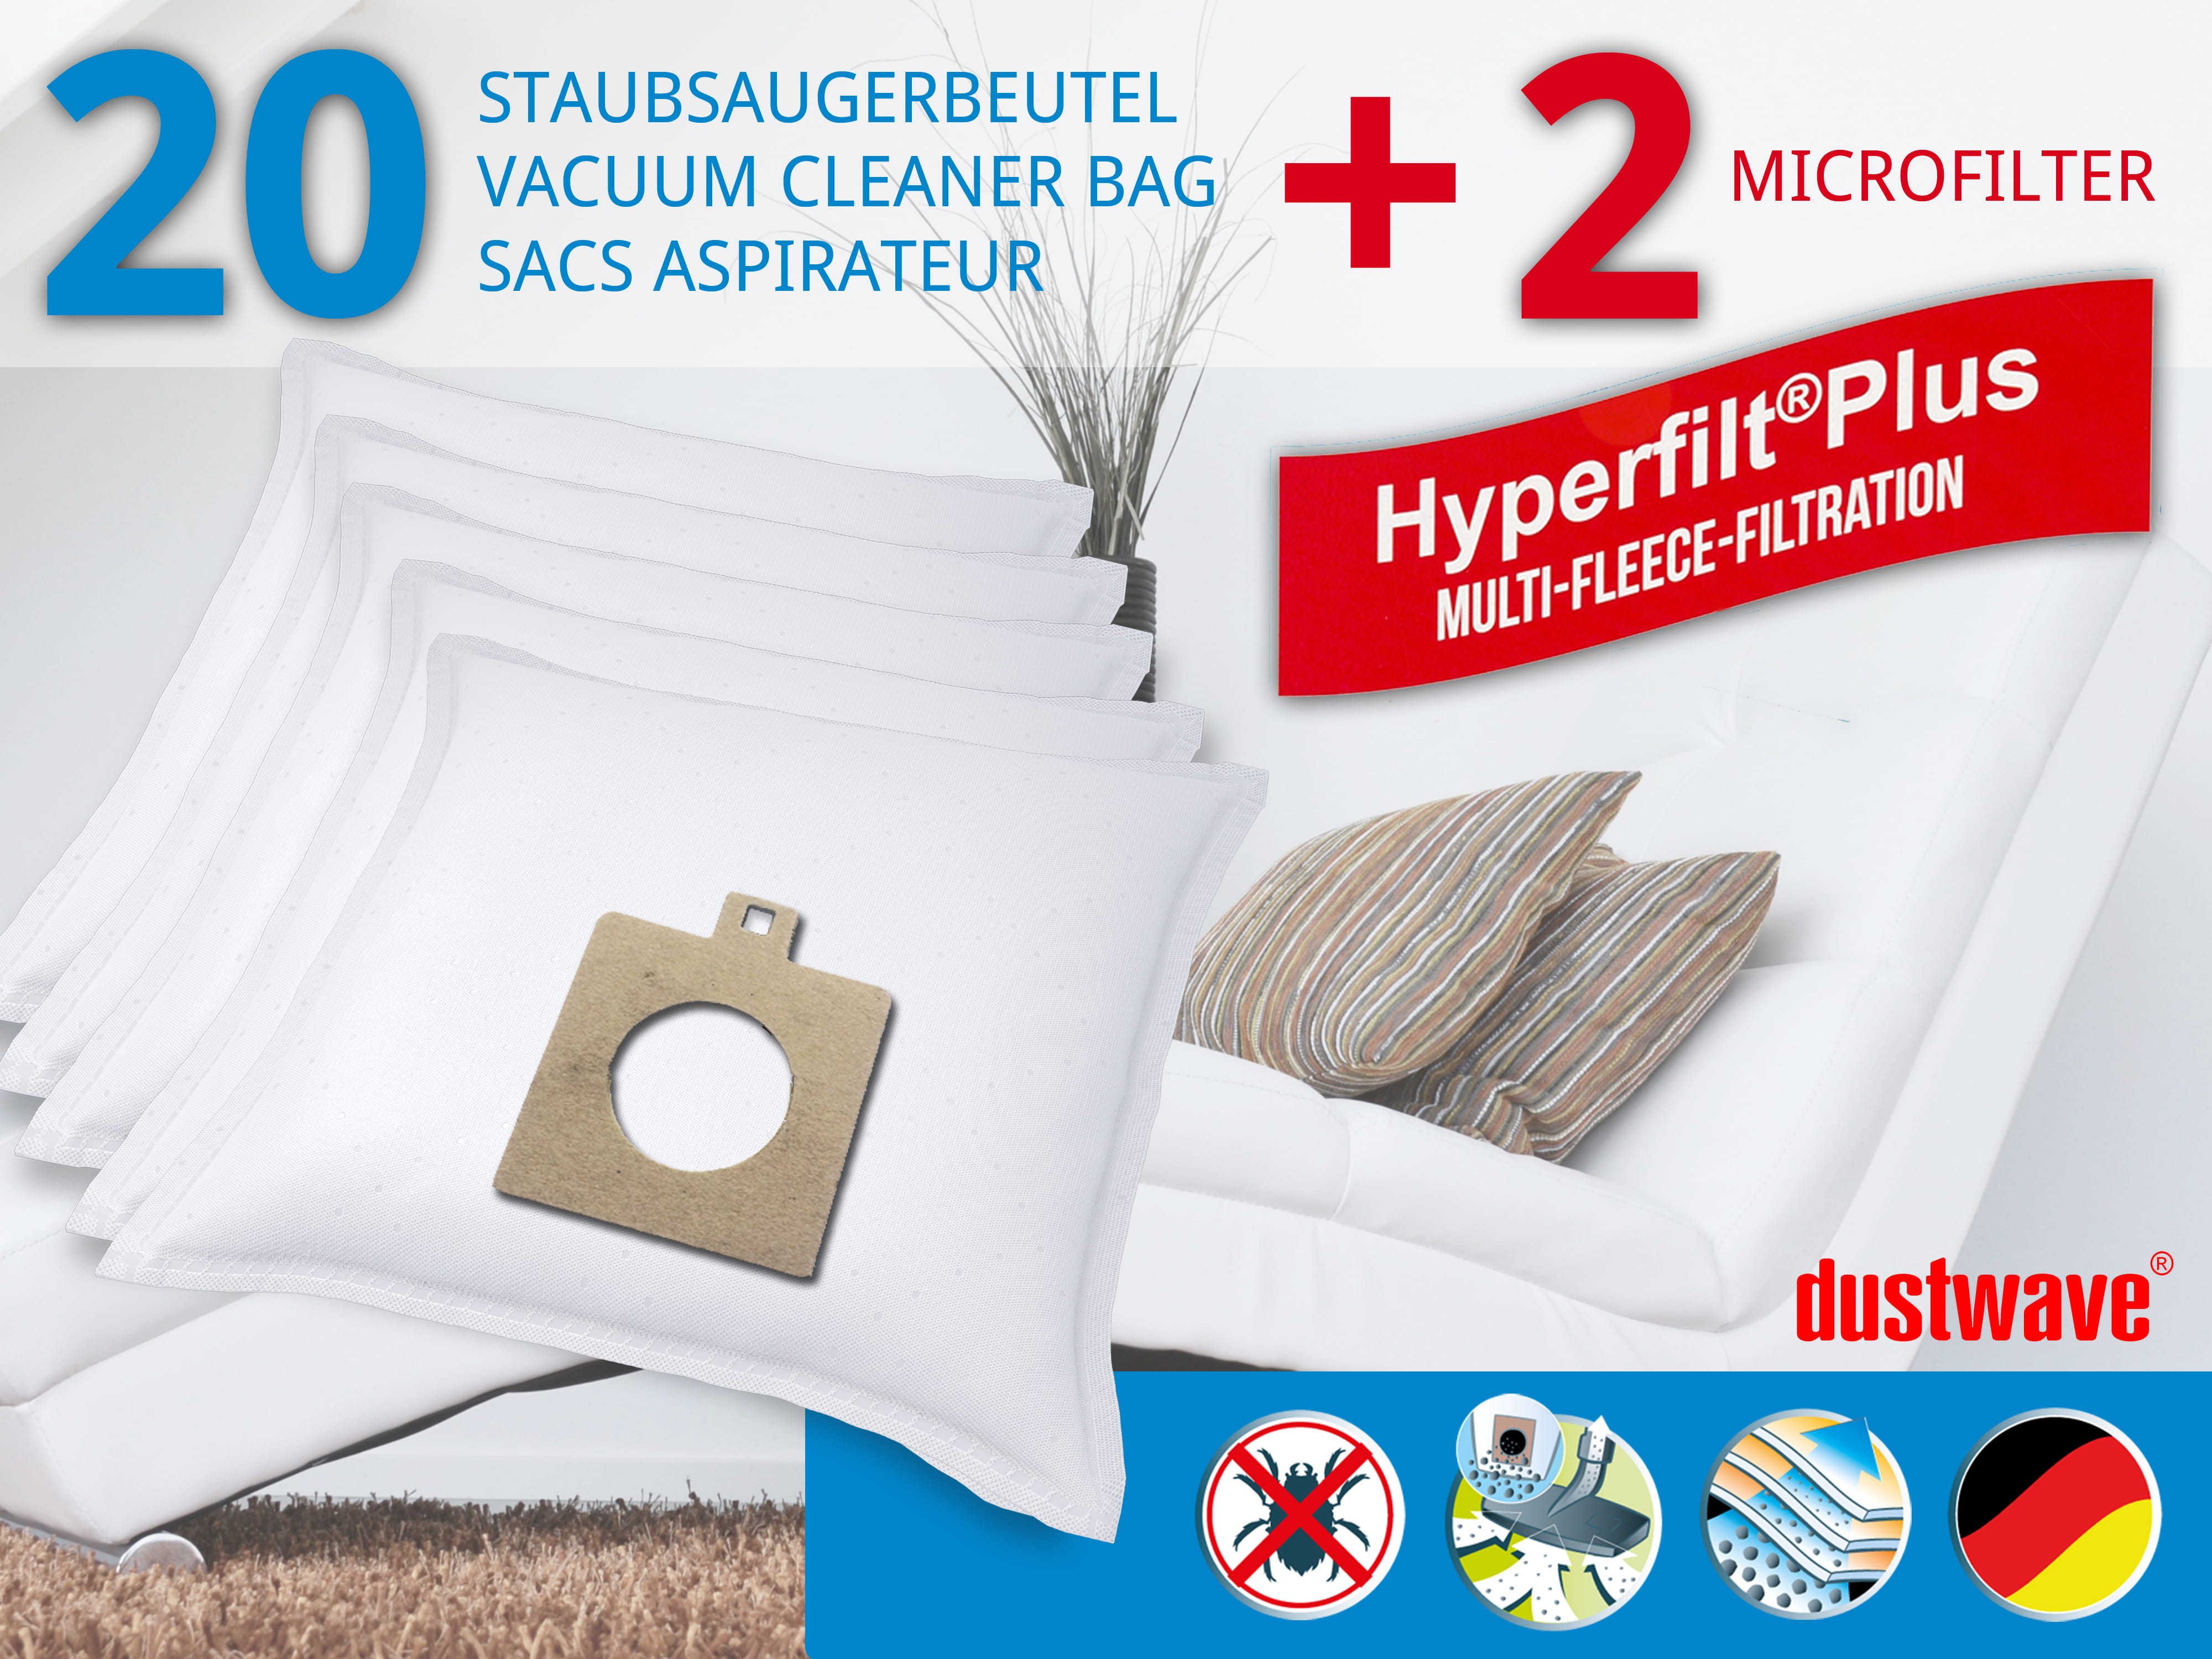 Dustwave® 20 Staubsaugerbeutel für Delta KS 1202 - hocheffizient, mehrlagiges Mikrovlies mit Hygieneverschluss - Made in Germany